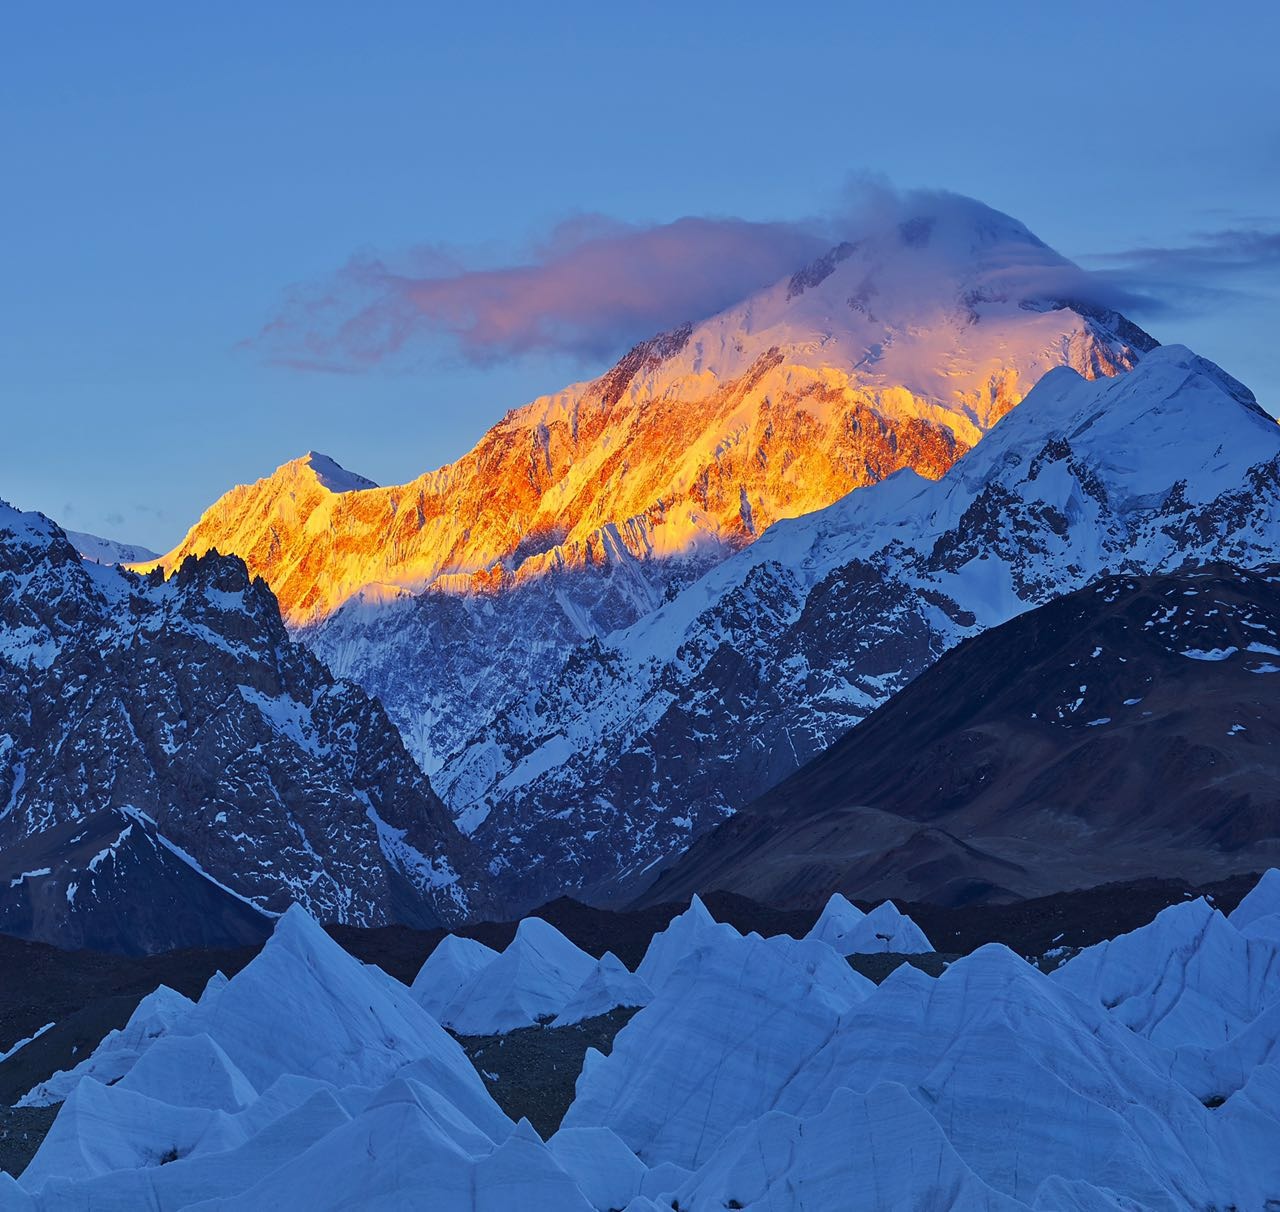 中国一侧的世界第11、13高峰迦舒布鲁姆I 、II峰